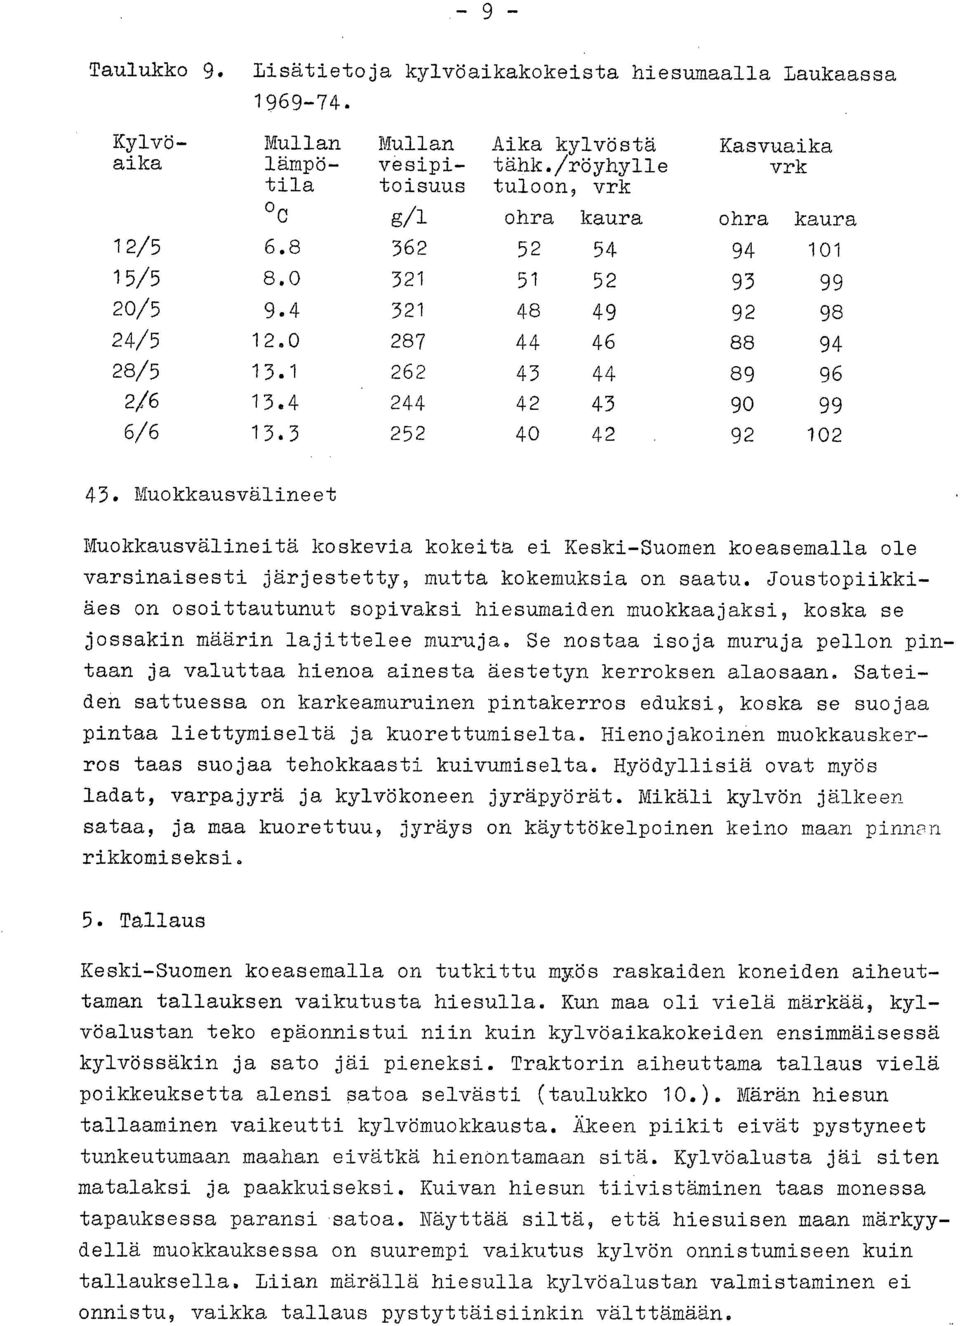 4 244 42 43 90 99 6/6 13.3 252 40 42 92 102 43. Muokkausvälineet Muokkausvälineitä koskevia kokeita ei Keski-Suomen koeasemalla ole varsinaisesti järjestetty, mutta kokemuksia on saatu.